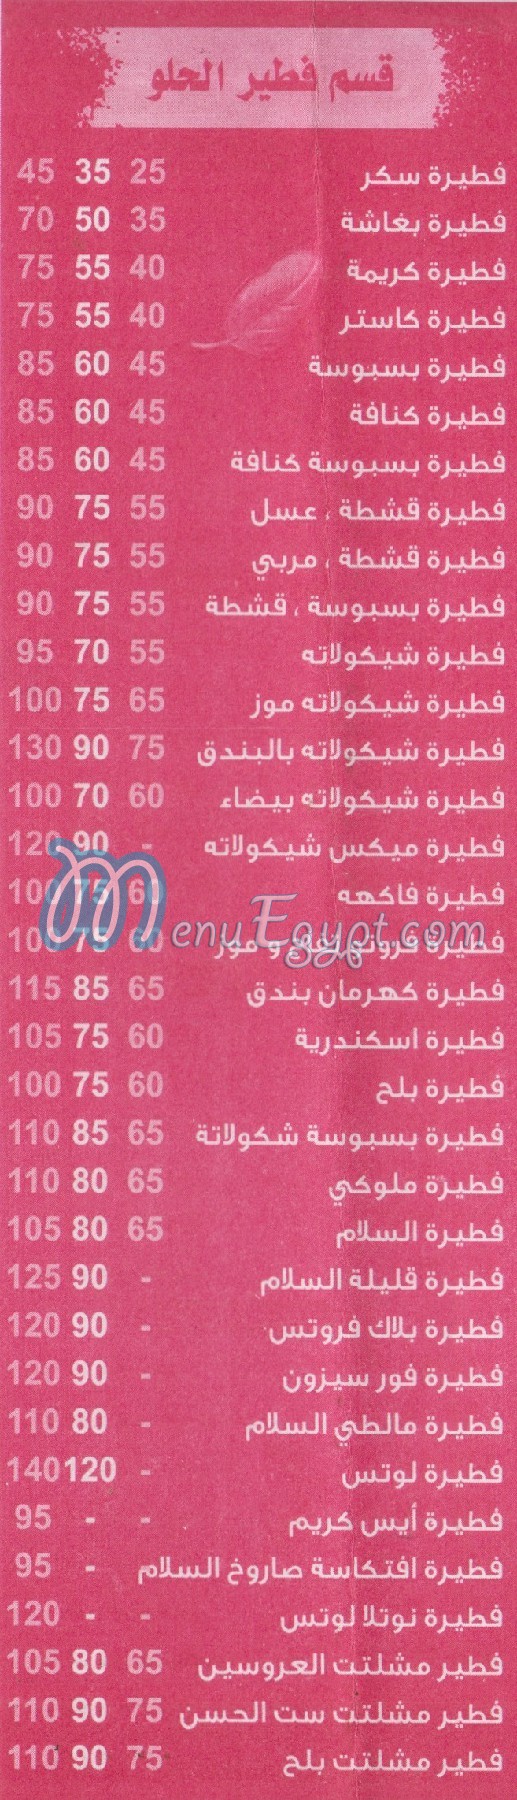 Al Salam Al Moqatam menu Egypt